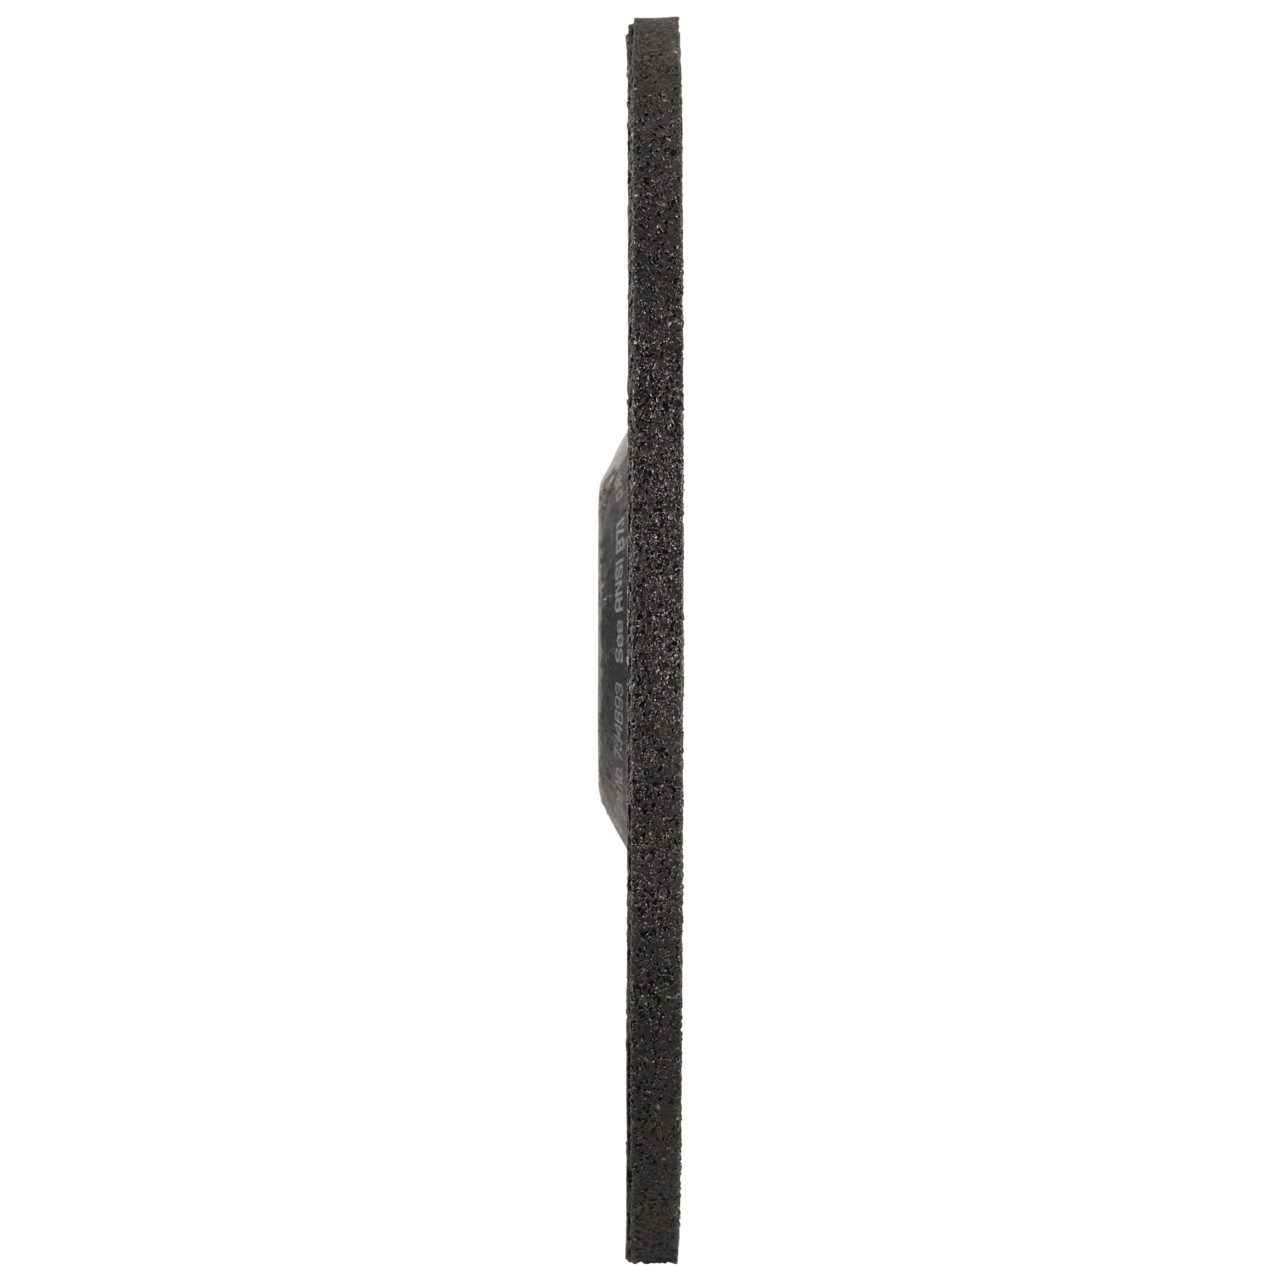 Tyrolit Grove slijpschijf DxUxH 150x6x22,23 FASTCUT Basic voor staal en roestvast staal, vorm: 27C - offset uitvoering, Art. 34468718